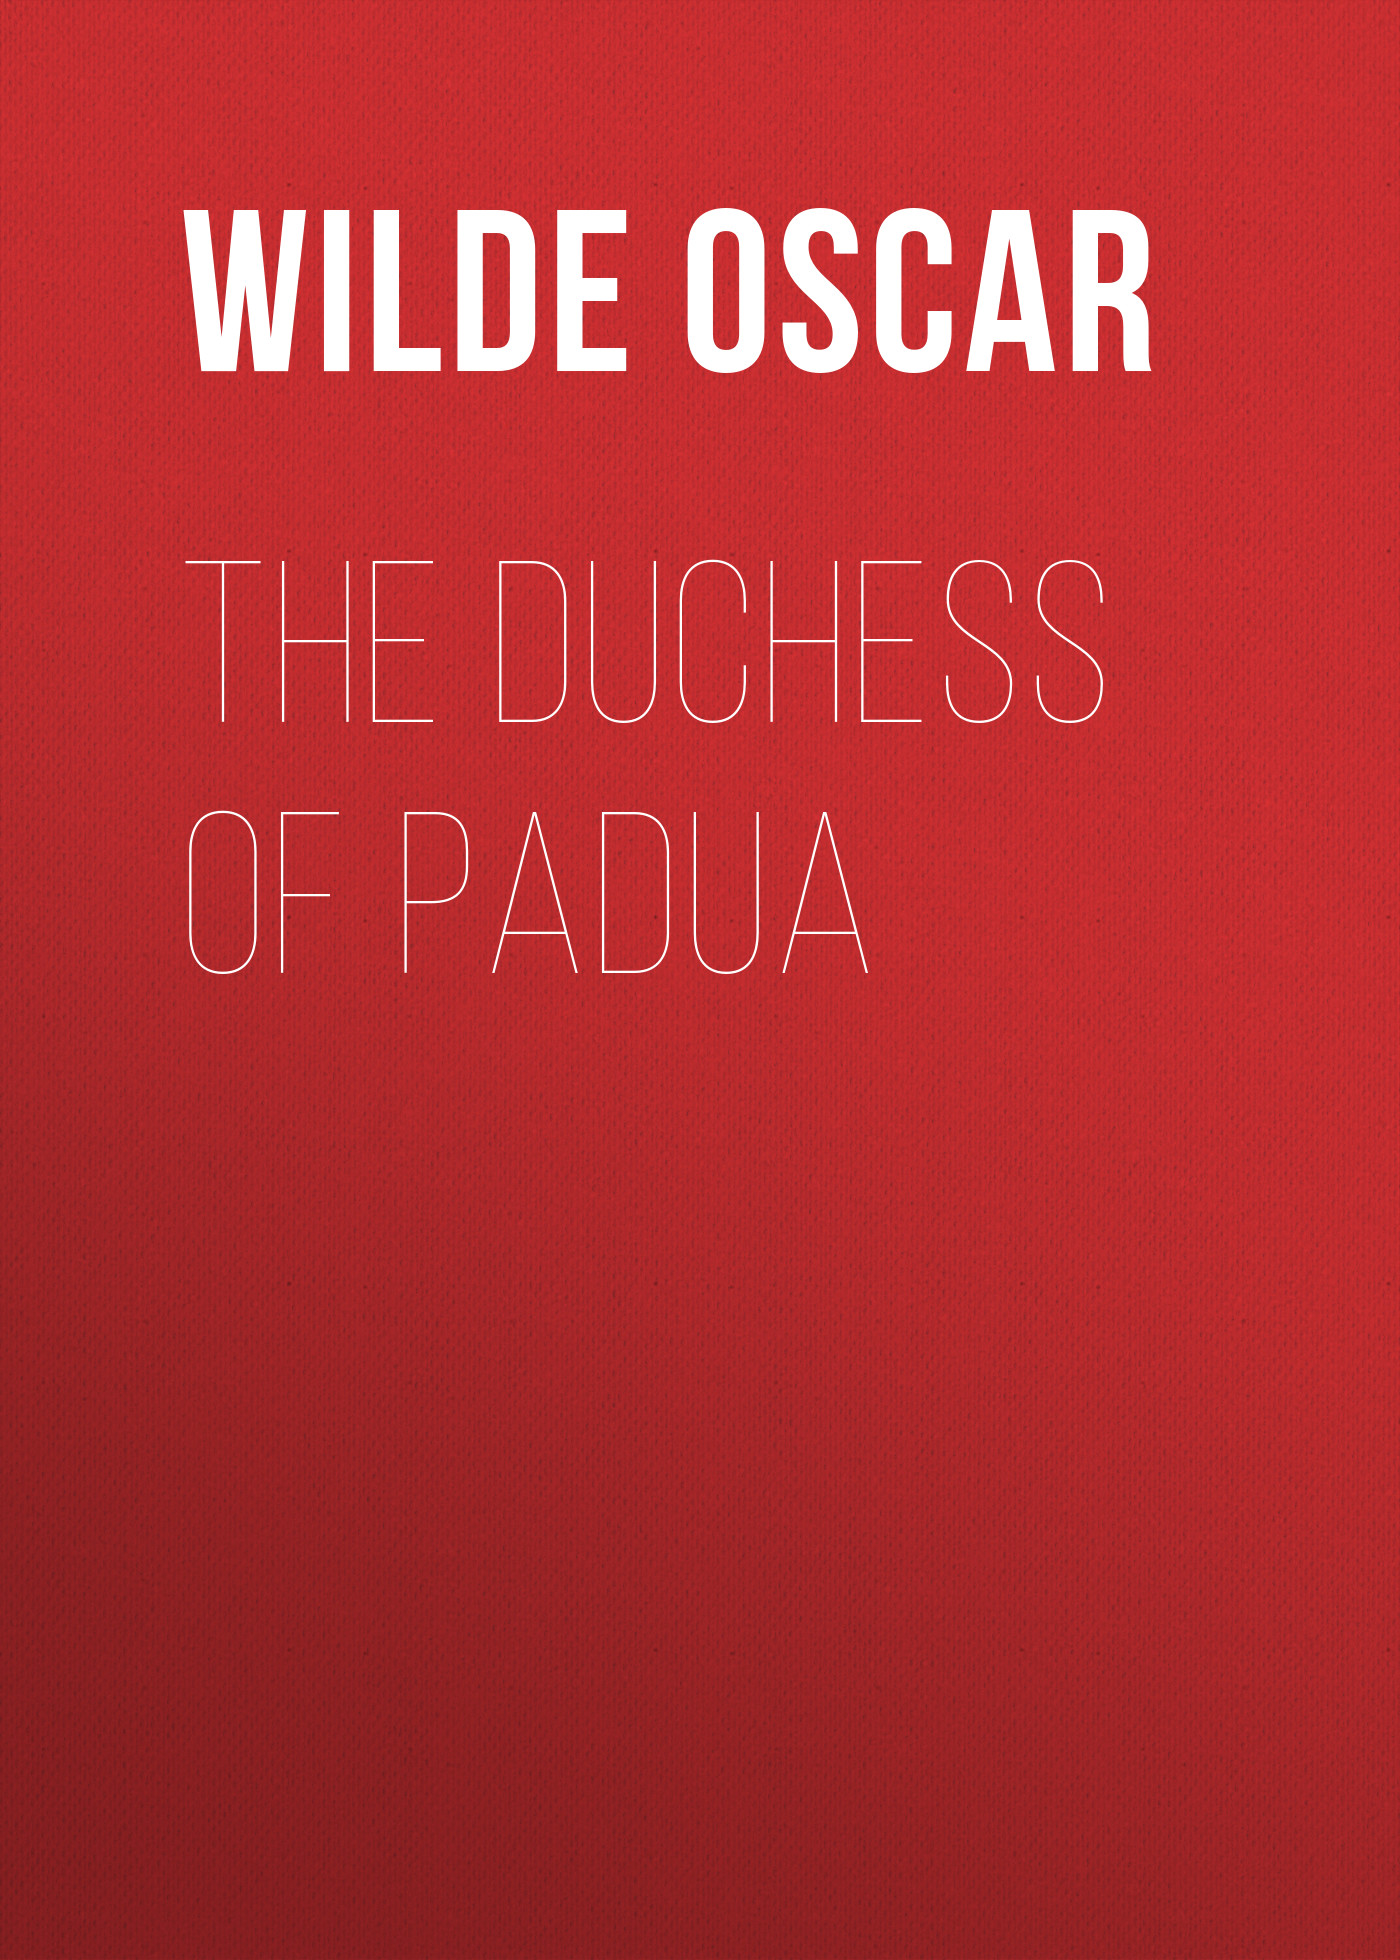 Книга The Duchess of Padua из серии , созданная Oscar Wilde, может относится к жанру Литература 19 века, Зарубежная классика, Зарубежная драматургия. Стоимость электронной книги The Duchess of Padua с идентификатором 25559844 составляет 0 руб.